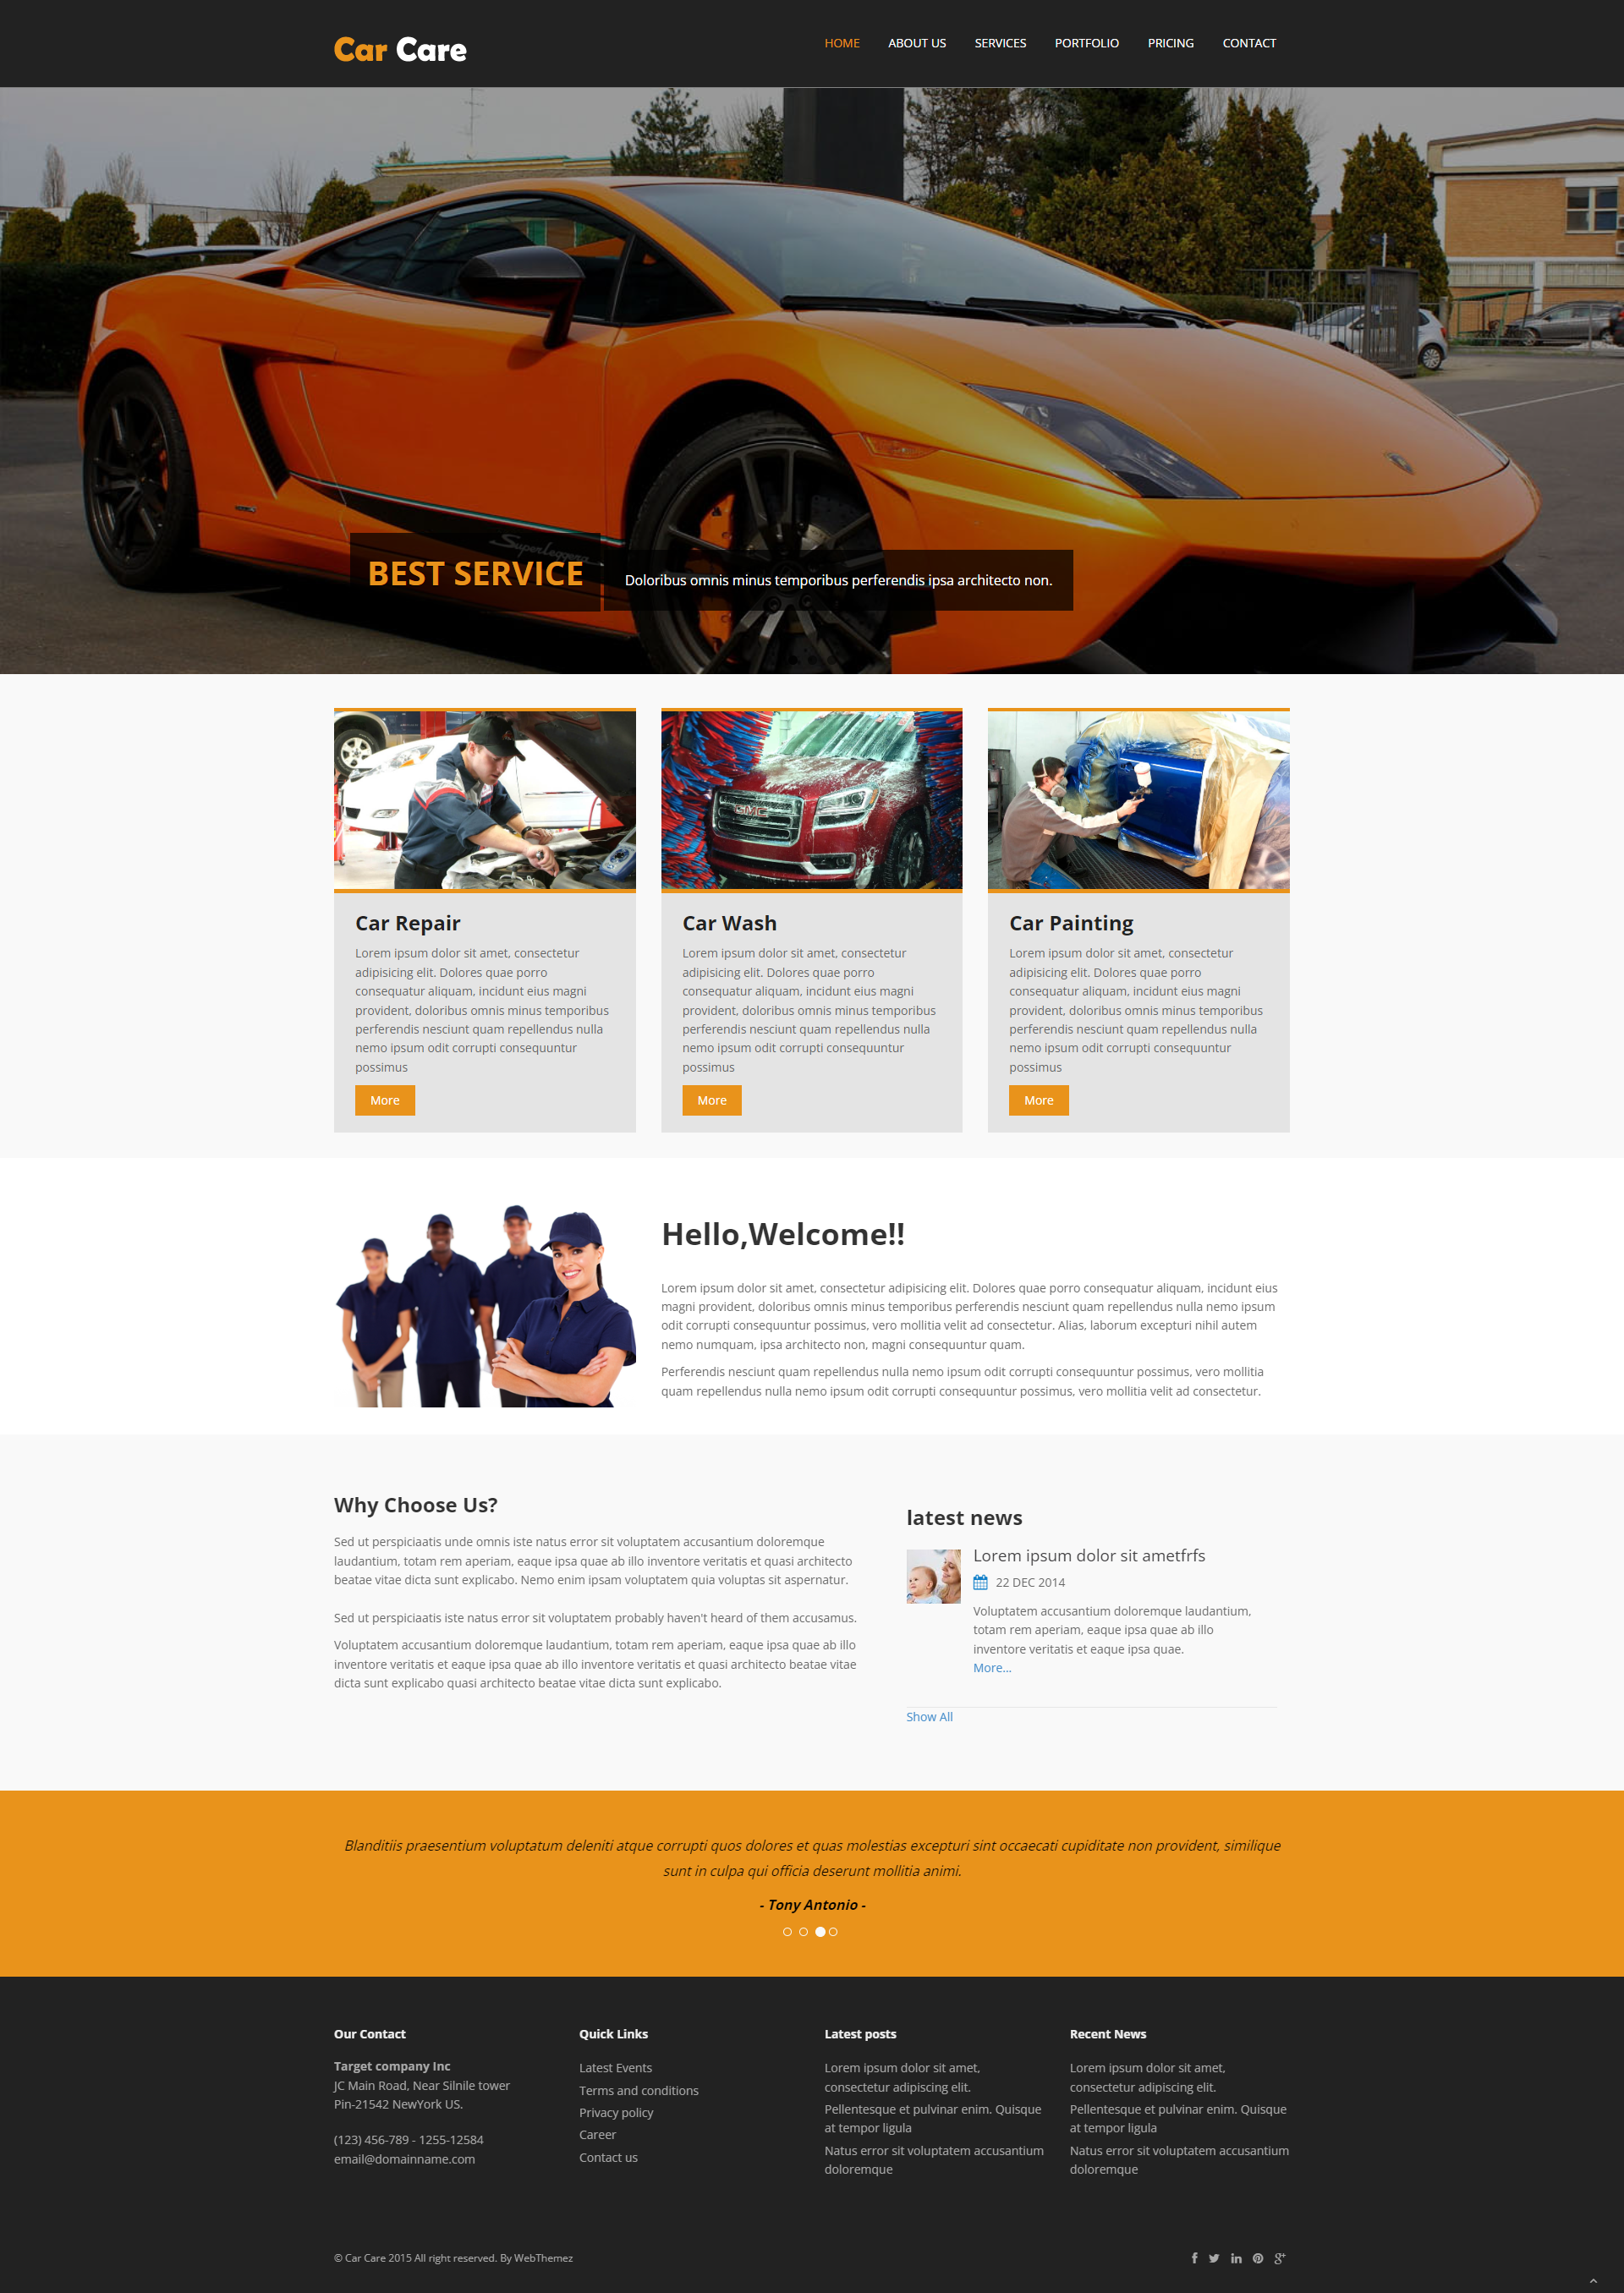 Chia sẻ giao diện website cho cửa hàng giới thiệu xe, sản phẩm kinh doanh thiết kế đẹp